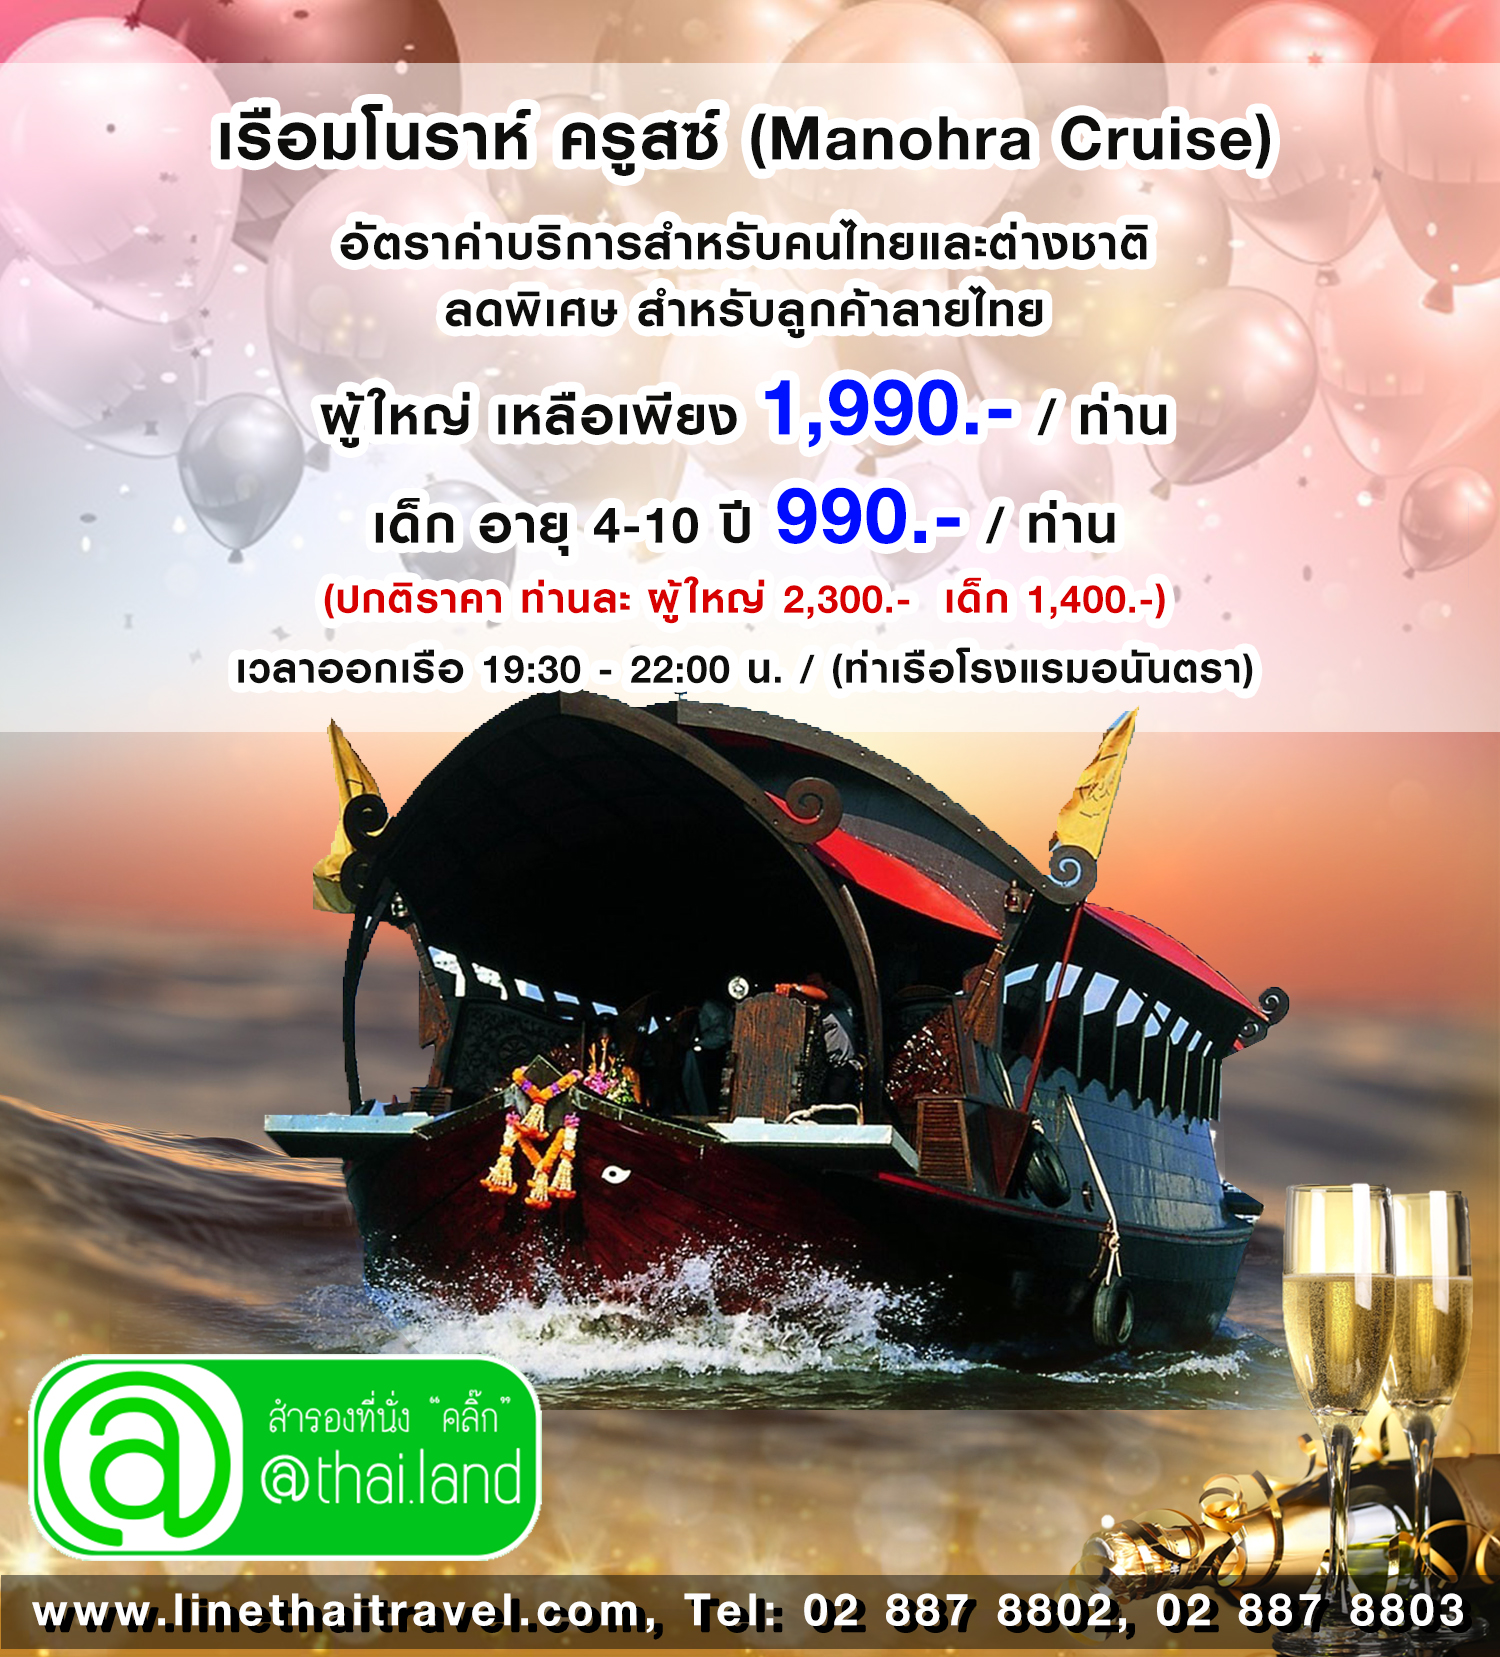 โปรแรง++ล่องเรือเเม่น้ำเจ้าพระยา เรือมโนราห์ ครูสซ์ (Manohra Cruise) รูปที่ 1